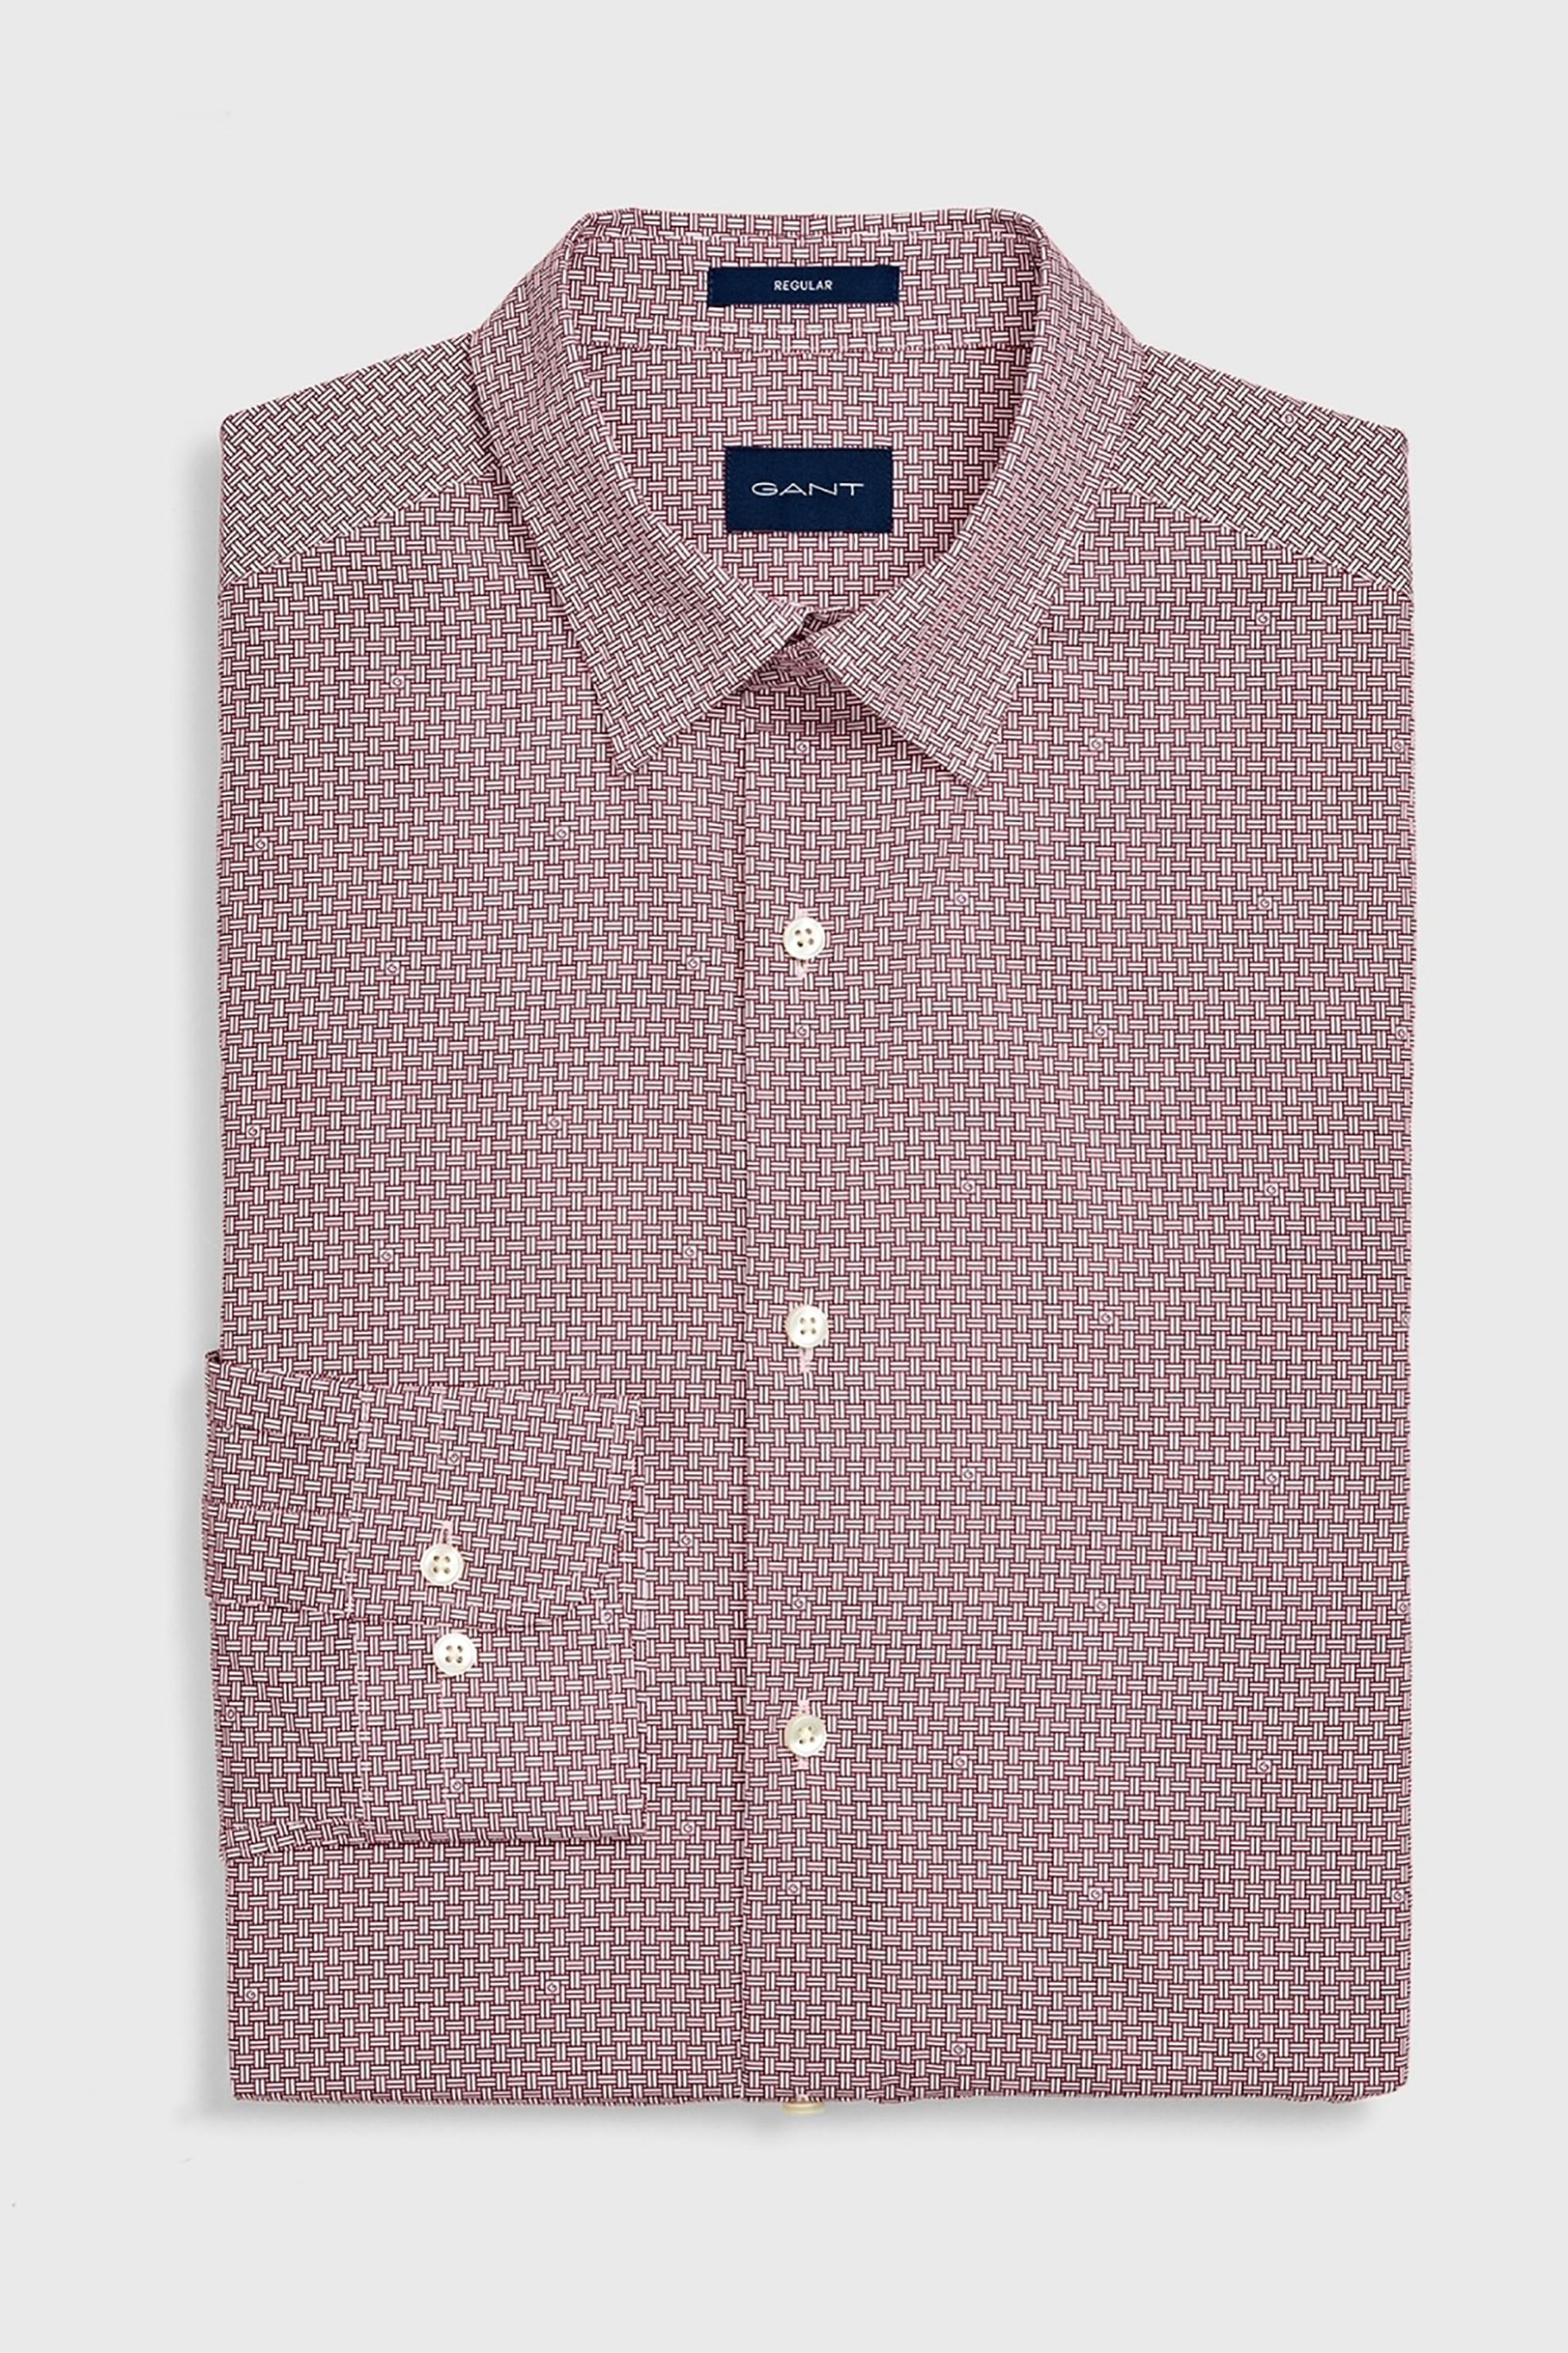 Άνδρας > ΡΟΥΧΑ > Πουκάμισα > Επίσημα & Βραδινά Gant ανδρικό πουκάμισο με μικροσχέδιο - 3051710 Μπορντό